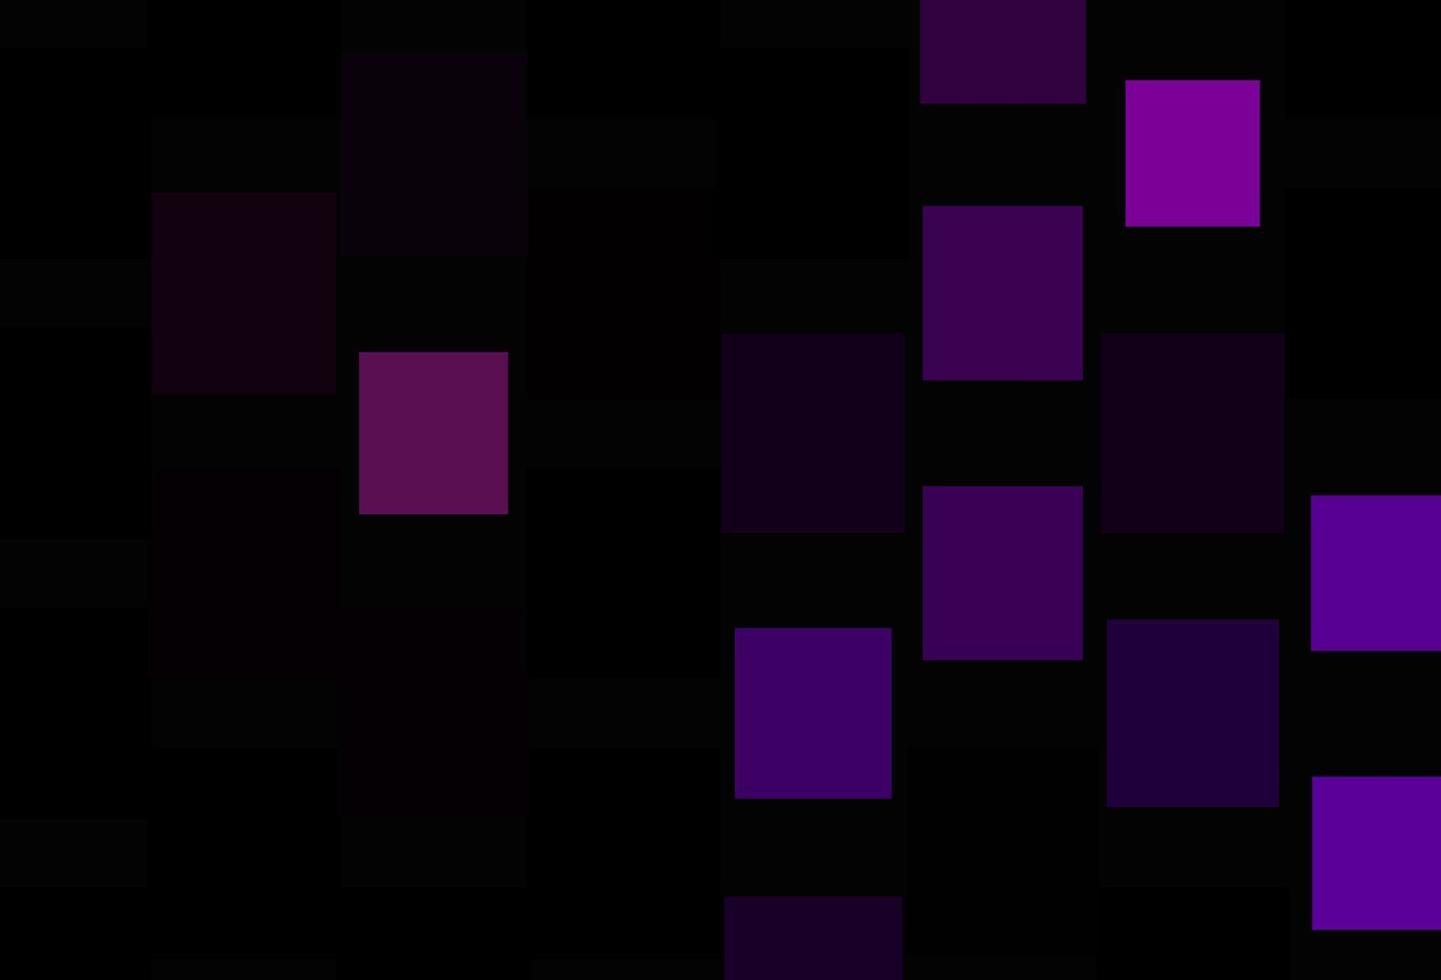 diseño vectorial púrpura oscuro con rectángulos, cuadrados. vector